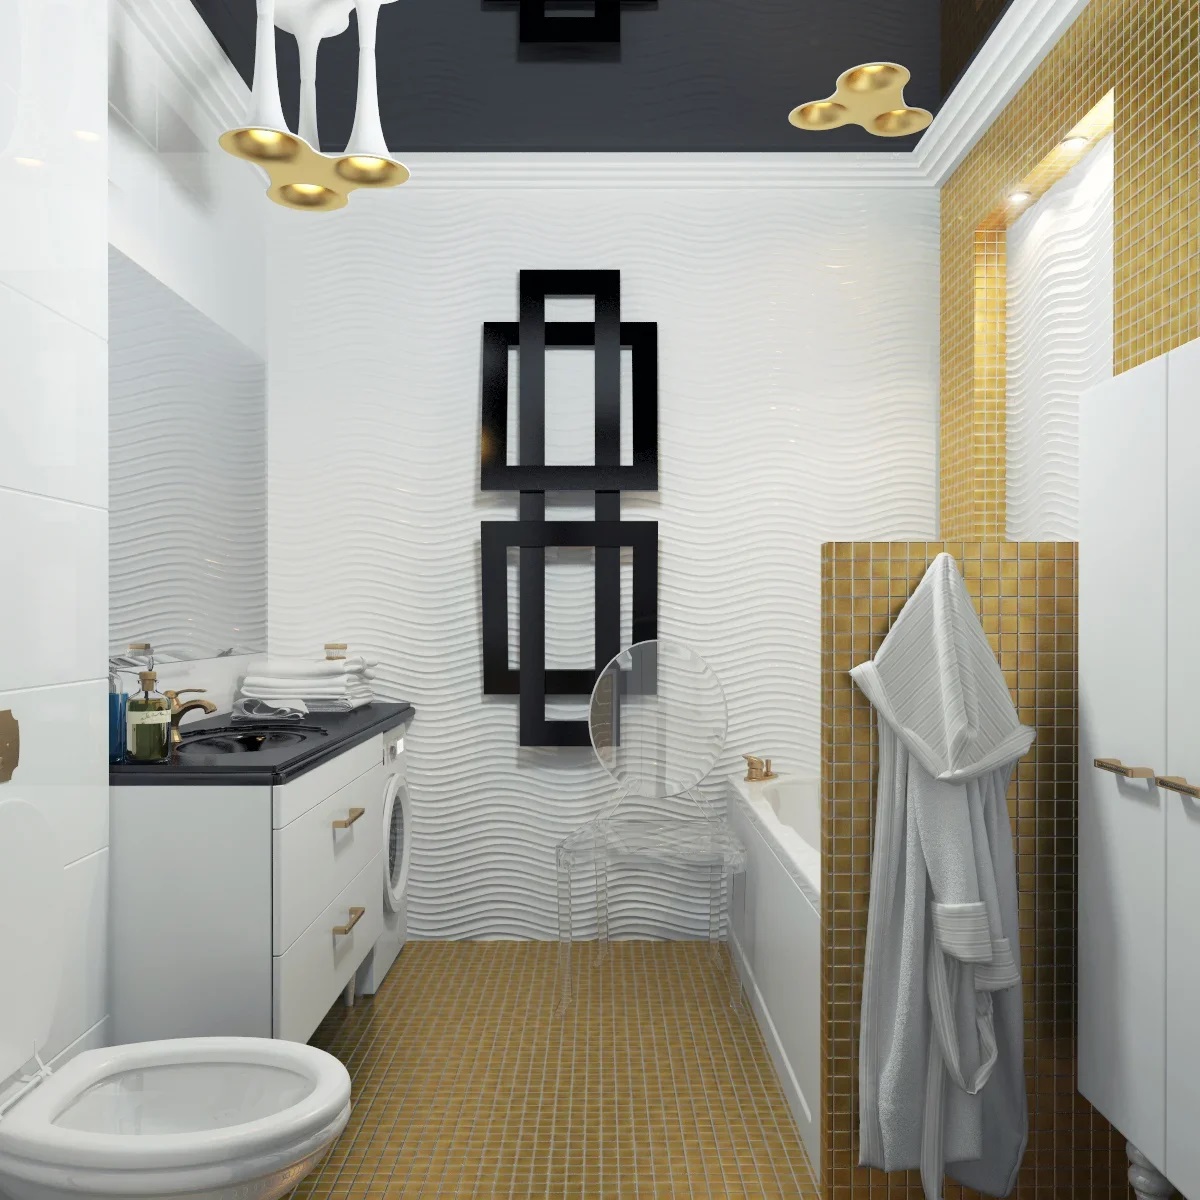 Дизайн интерьера ванной комнаты - студия архитектуры и дизайна интерьера Анна Шац